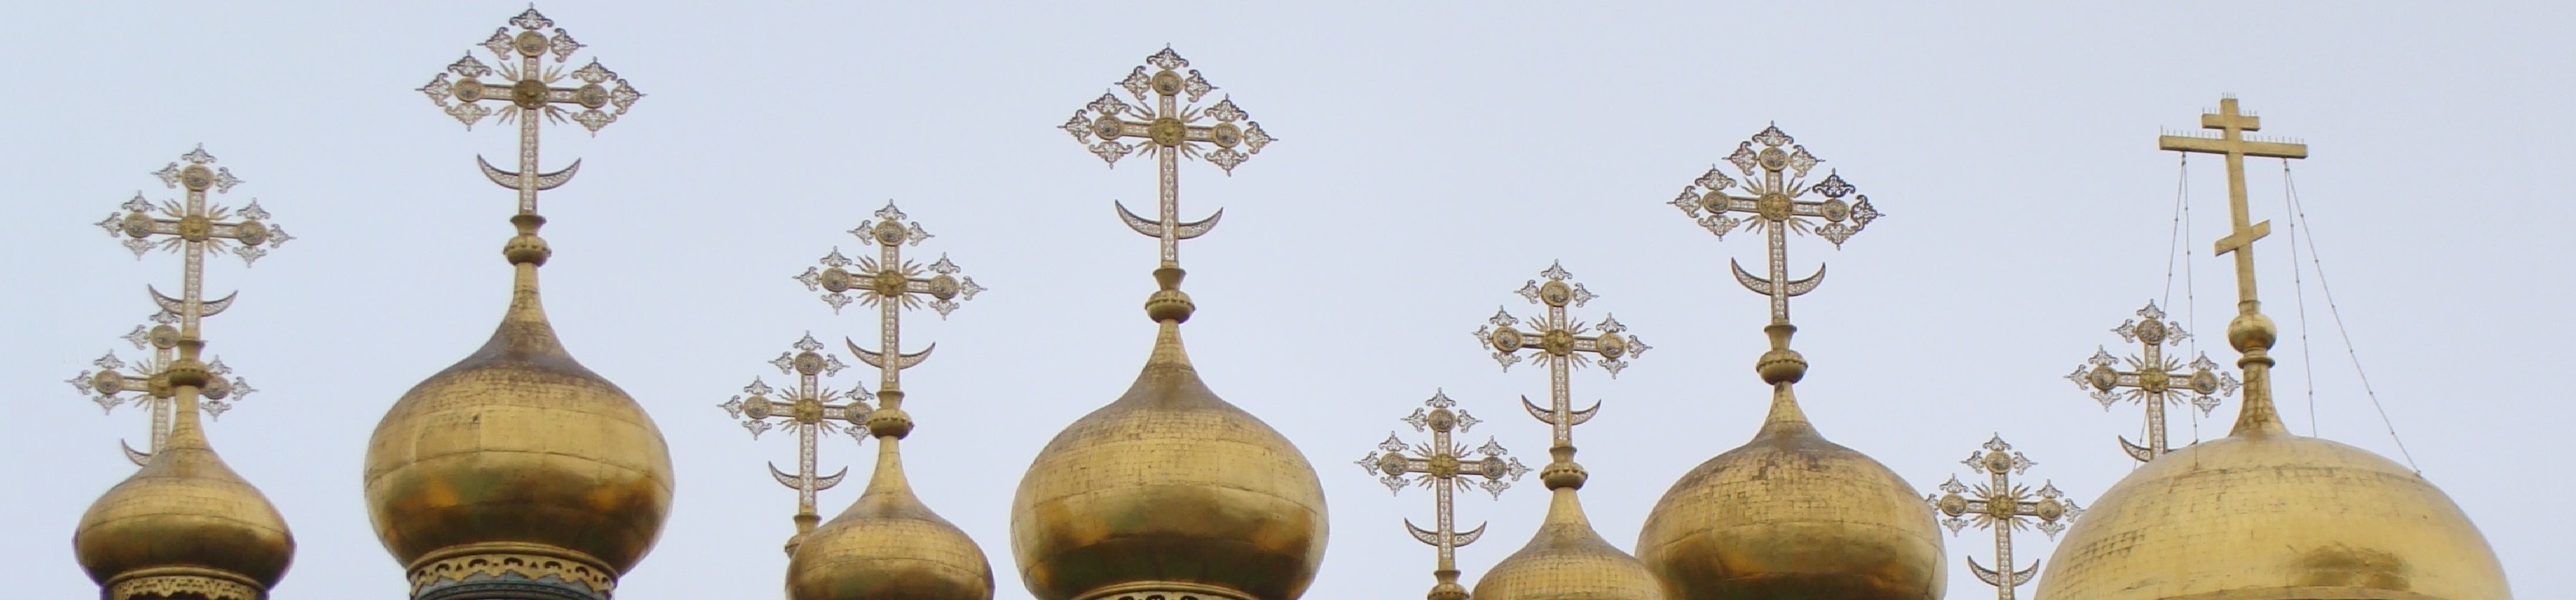 Les douze coupoles de l'église de la Nativit, au Kremlin de Moscou